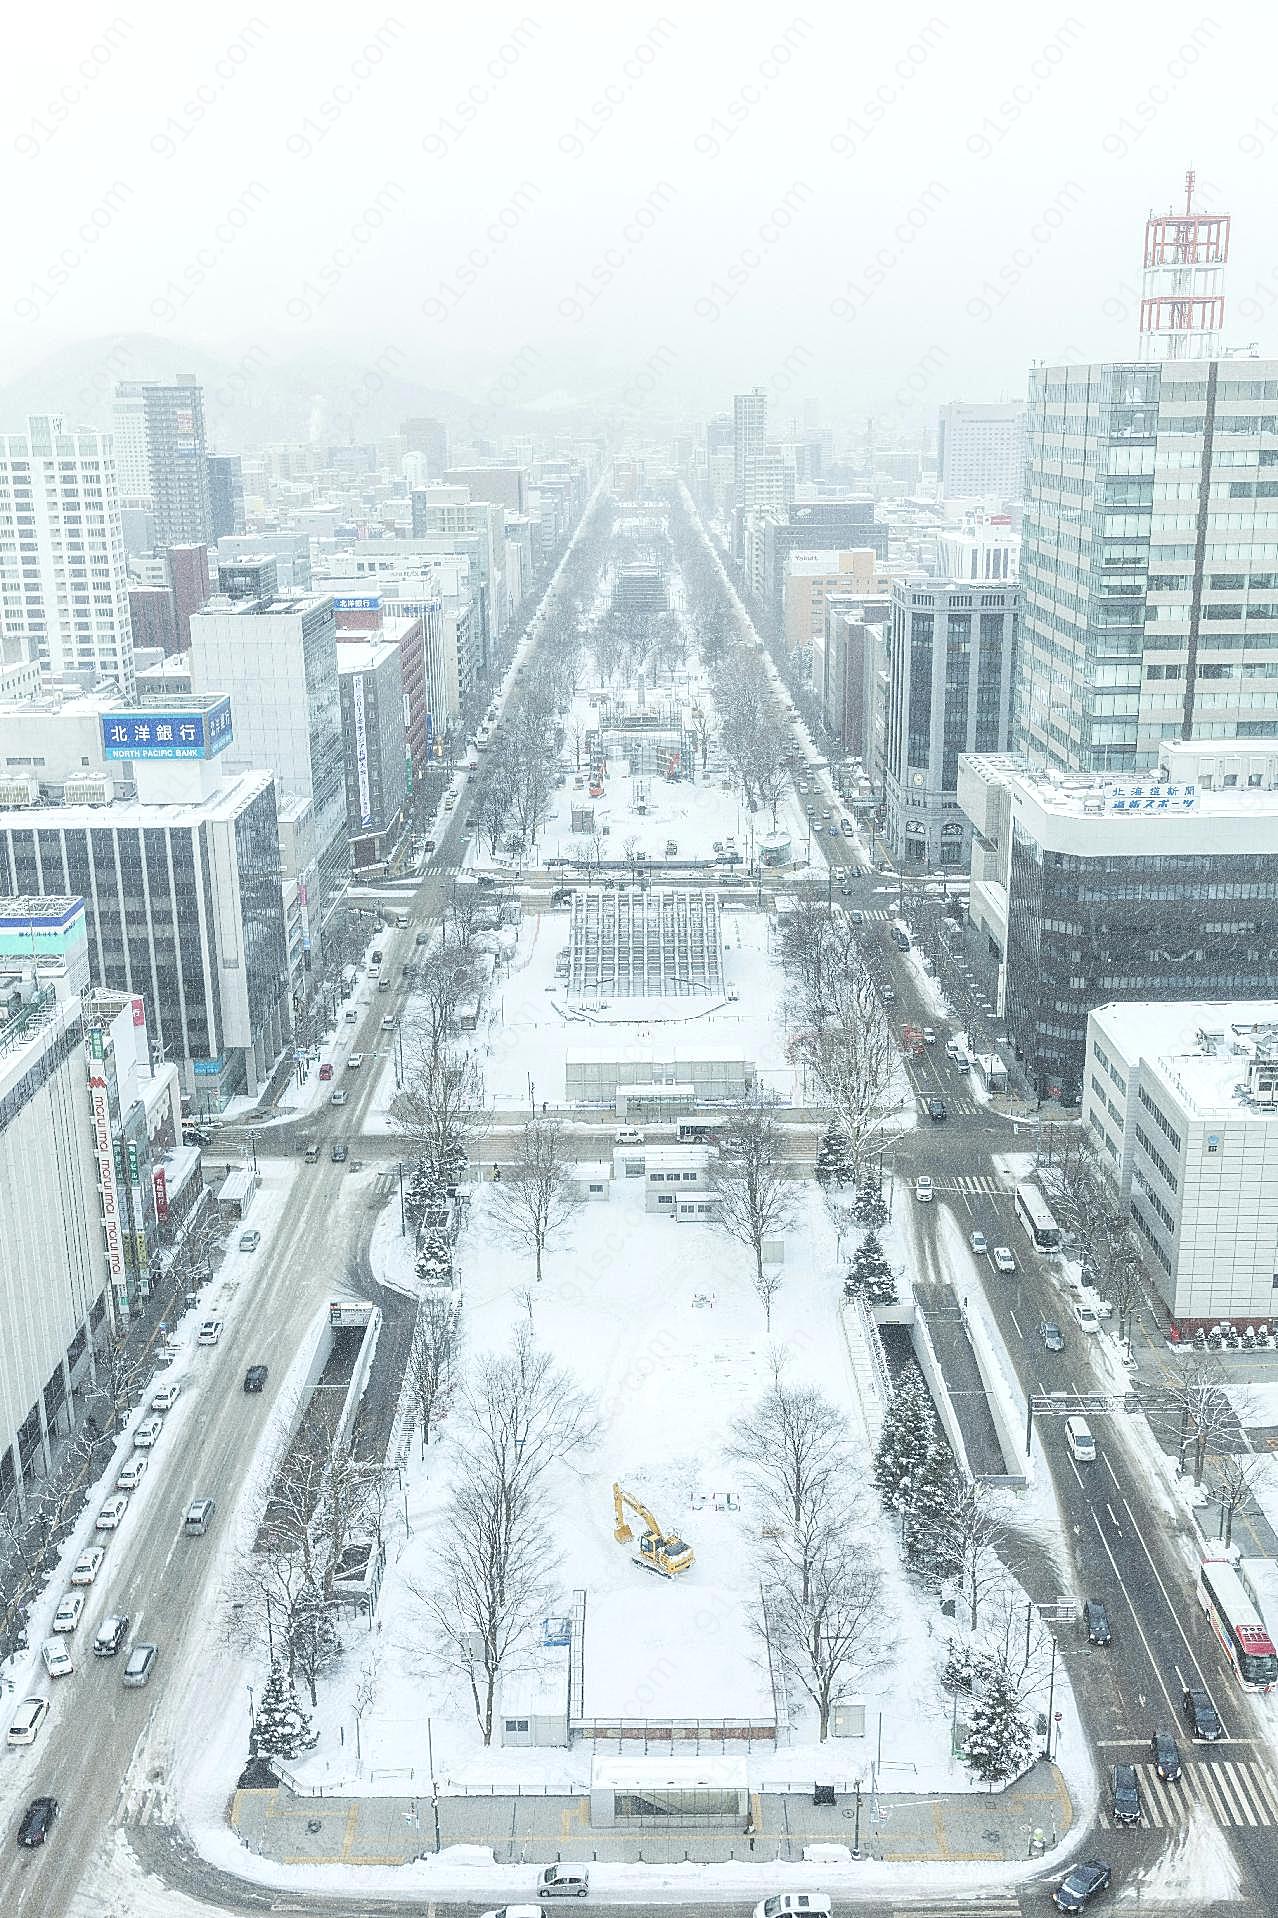 日本街道冬季风景图片城市景观